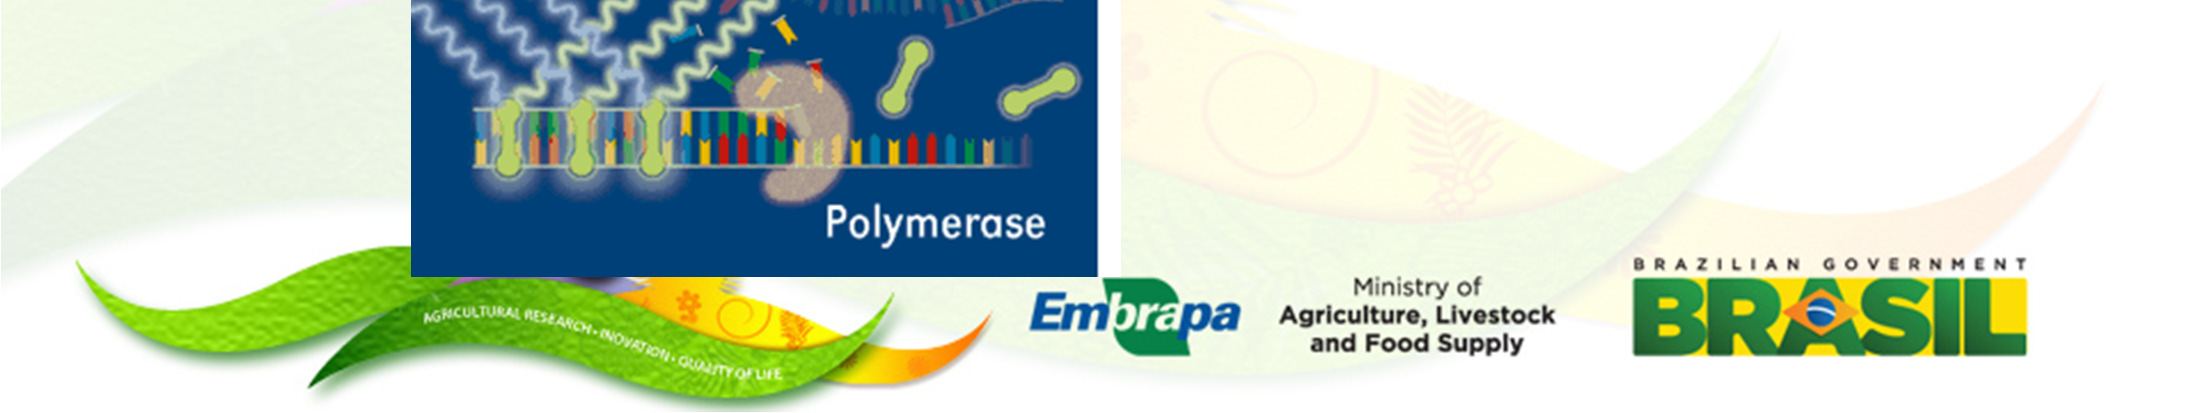 Método de detecção de produtos de amplificação: SYBR Green Vantagens: custo; sensibilidade; só liga a DNA